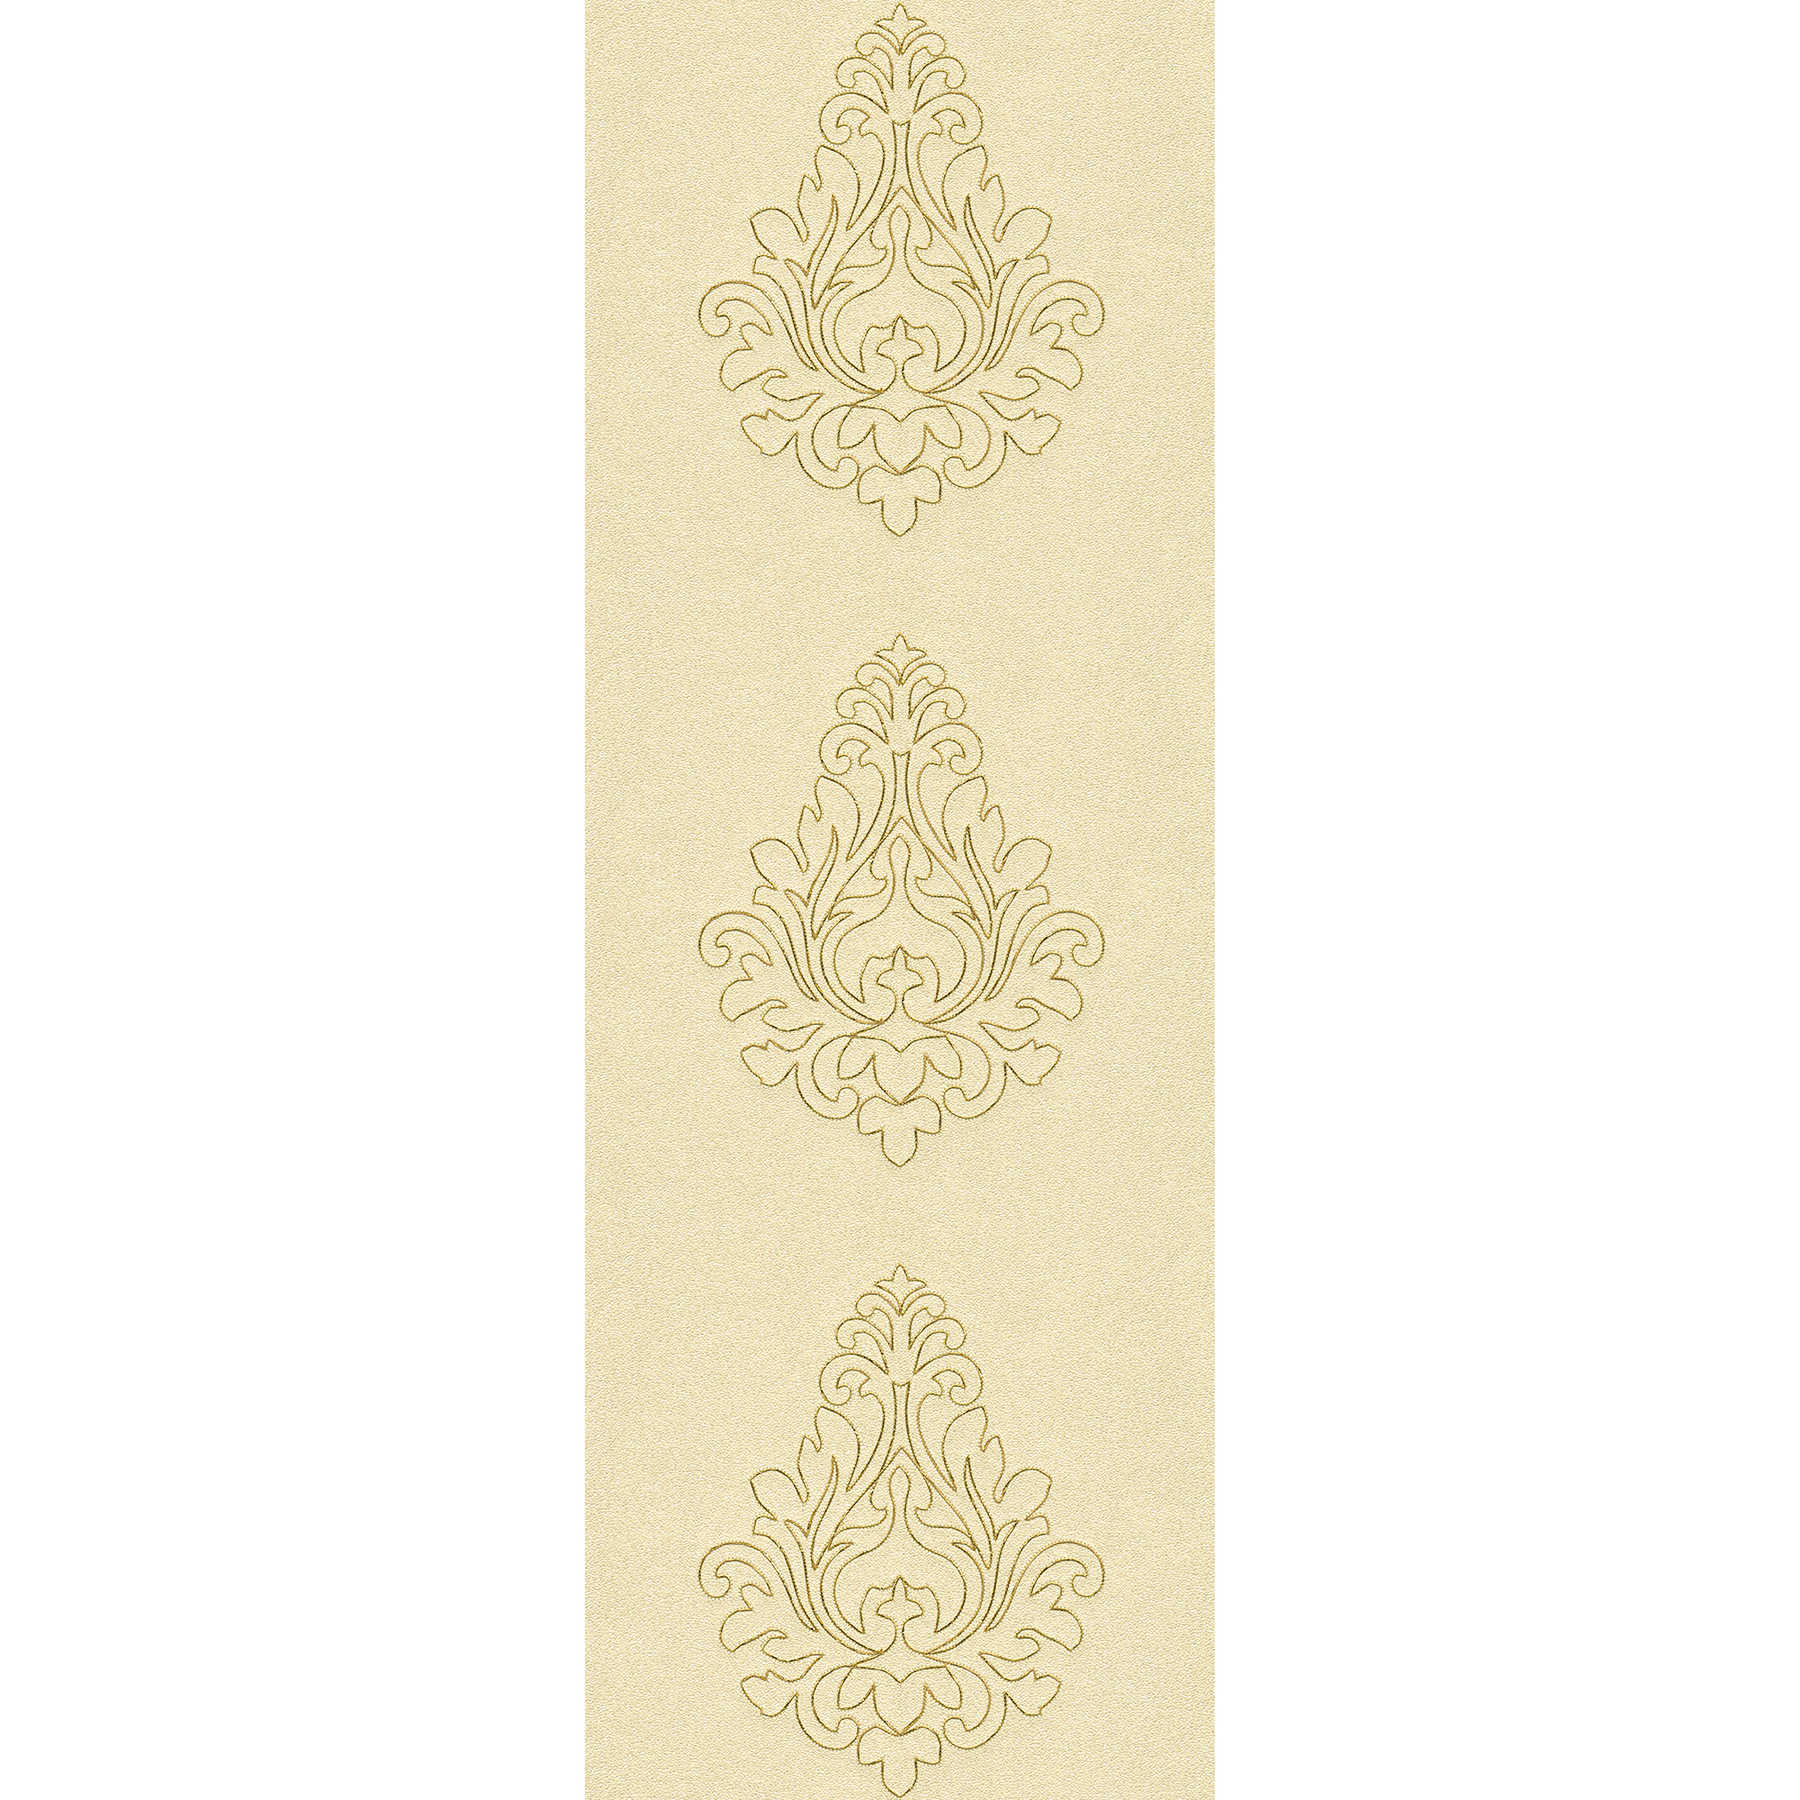 Premium-Wandpanel mit Ornamenten und starker Struktur – Gelb, Gold
